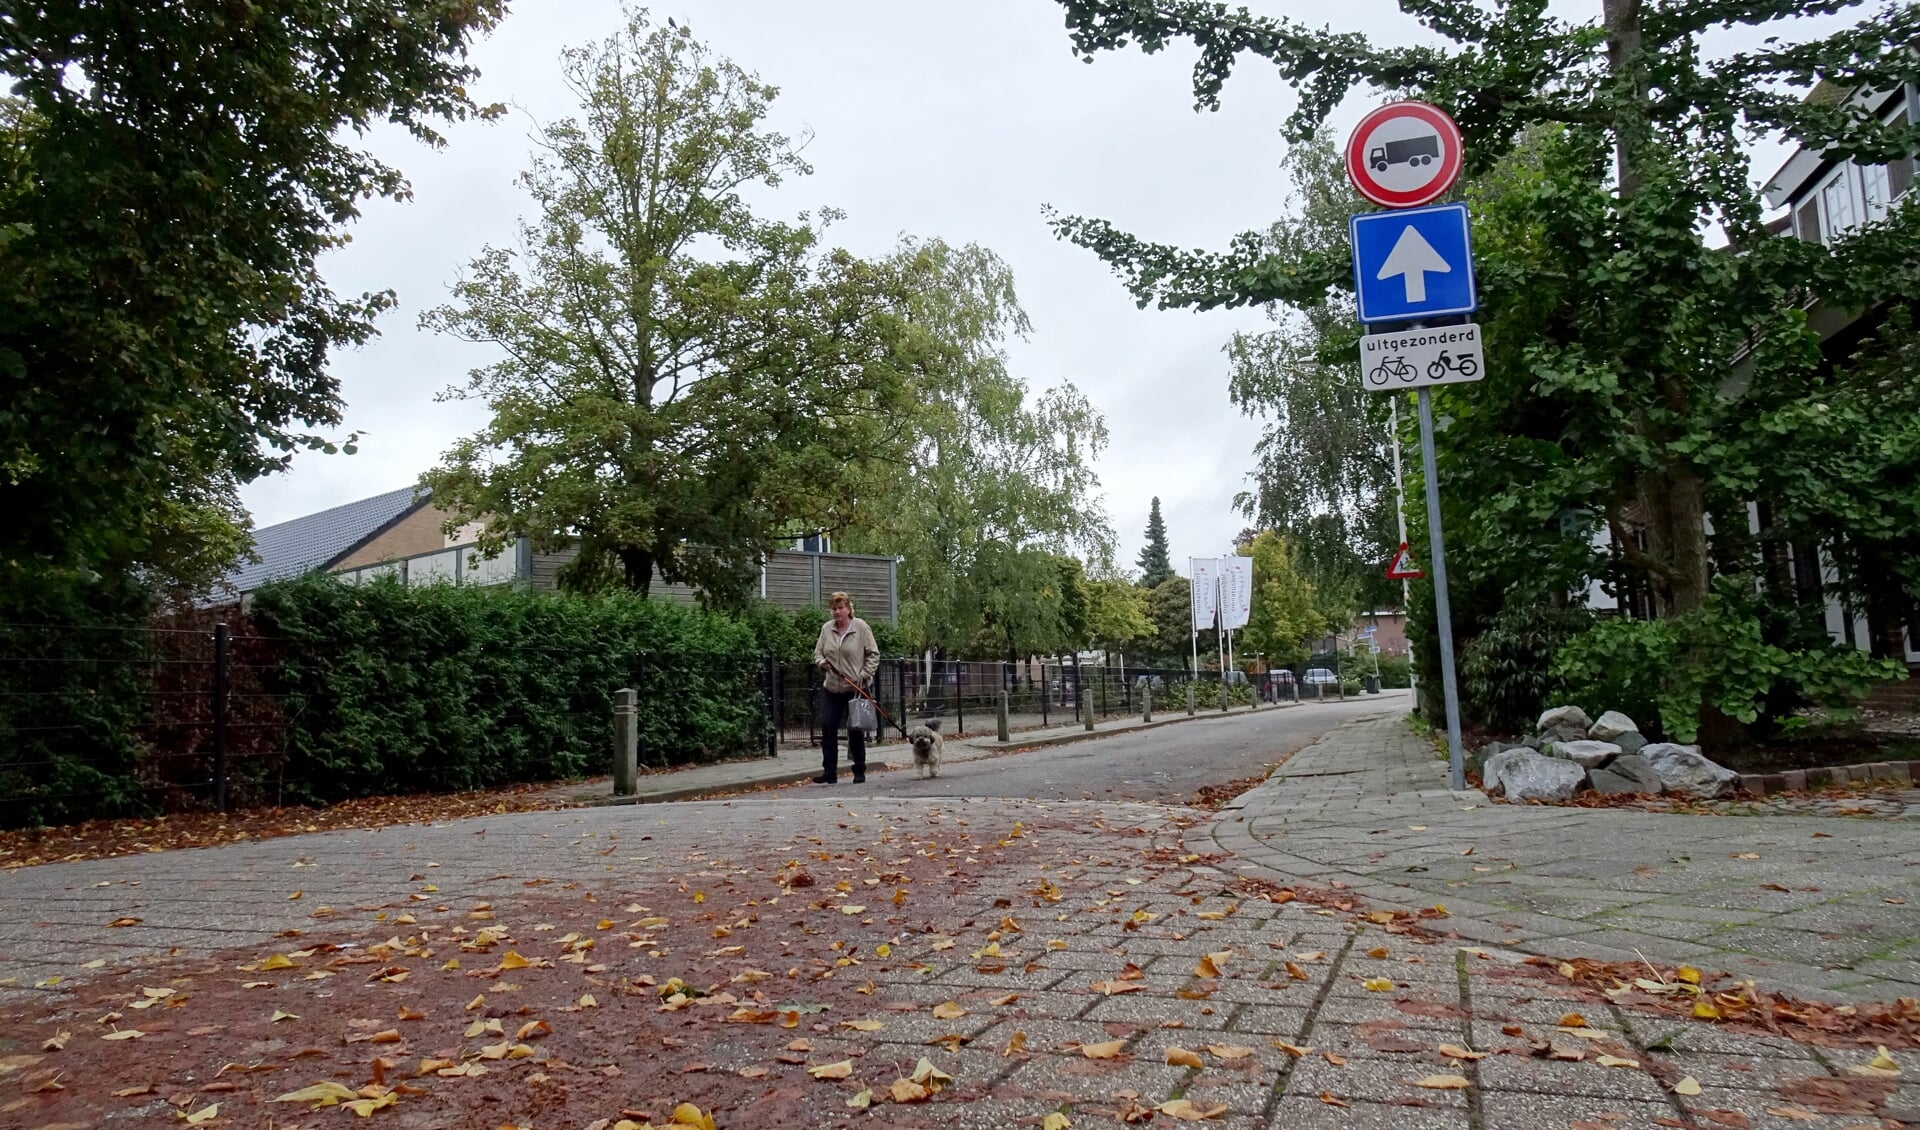 De Flierenhofstraat wordt een rode  fietsstraat waarin auto's te gast zijn. (foto: Sjaak Veldkamp)